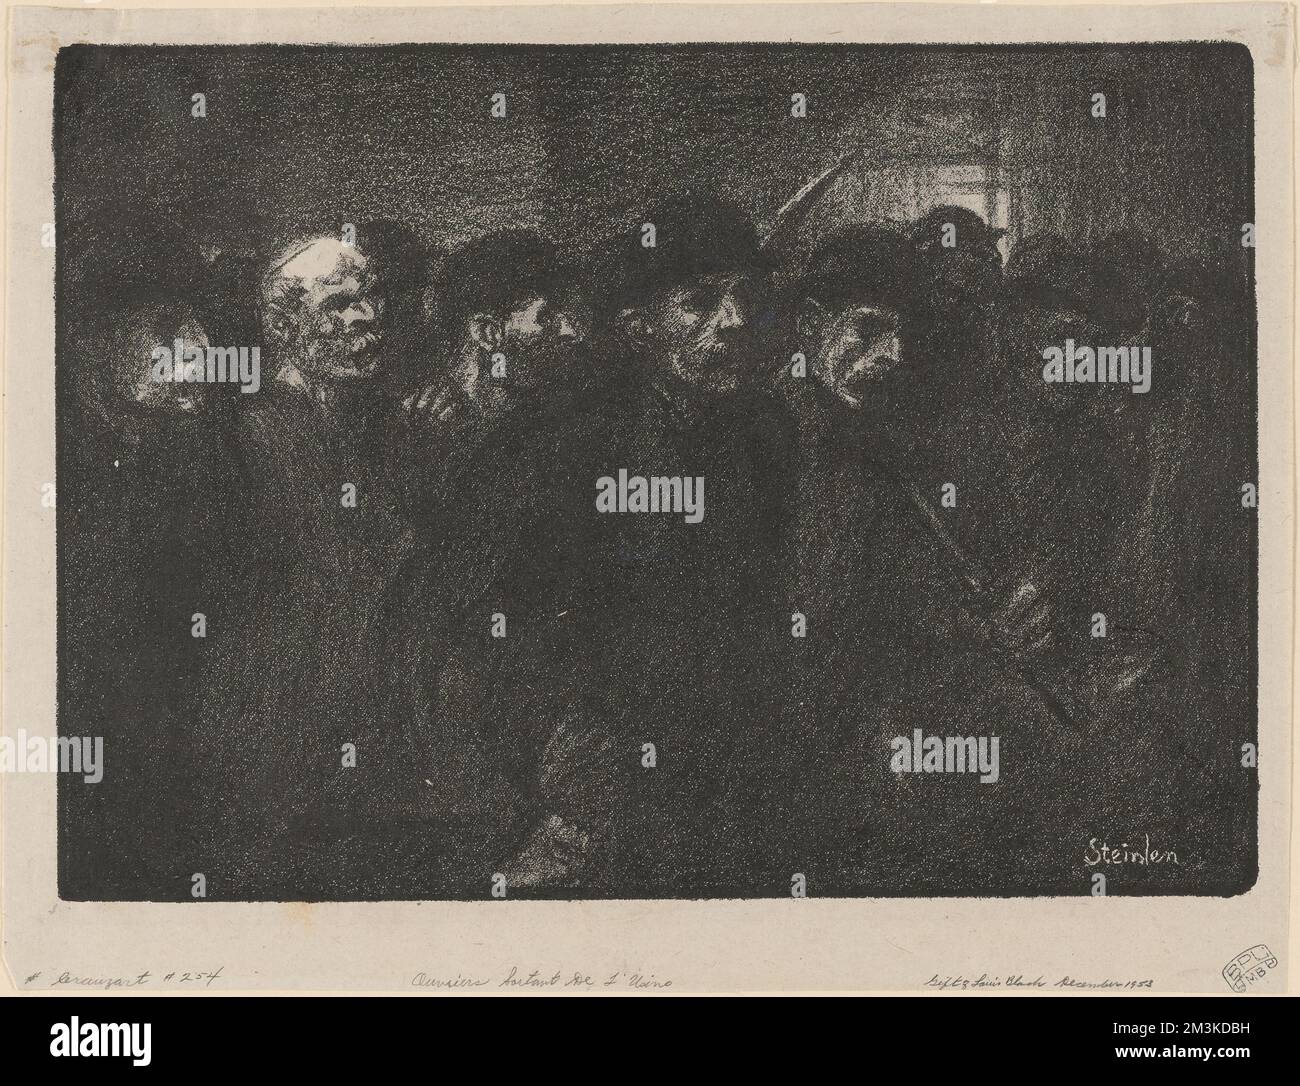 Ouvriers sortant de l'usine , Laborers, Factories, Arrivals & departures. Théophile Alexandre Steinlen (1859-1923). Lithographs Stock Photo